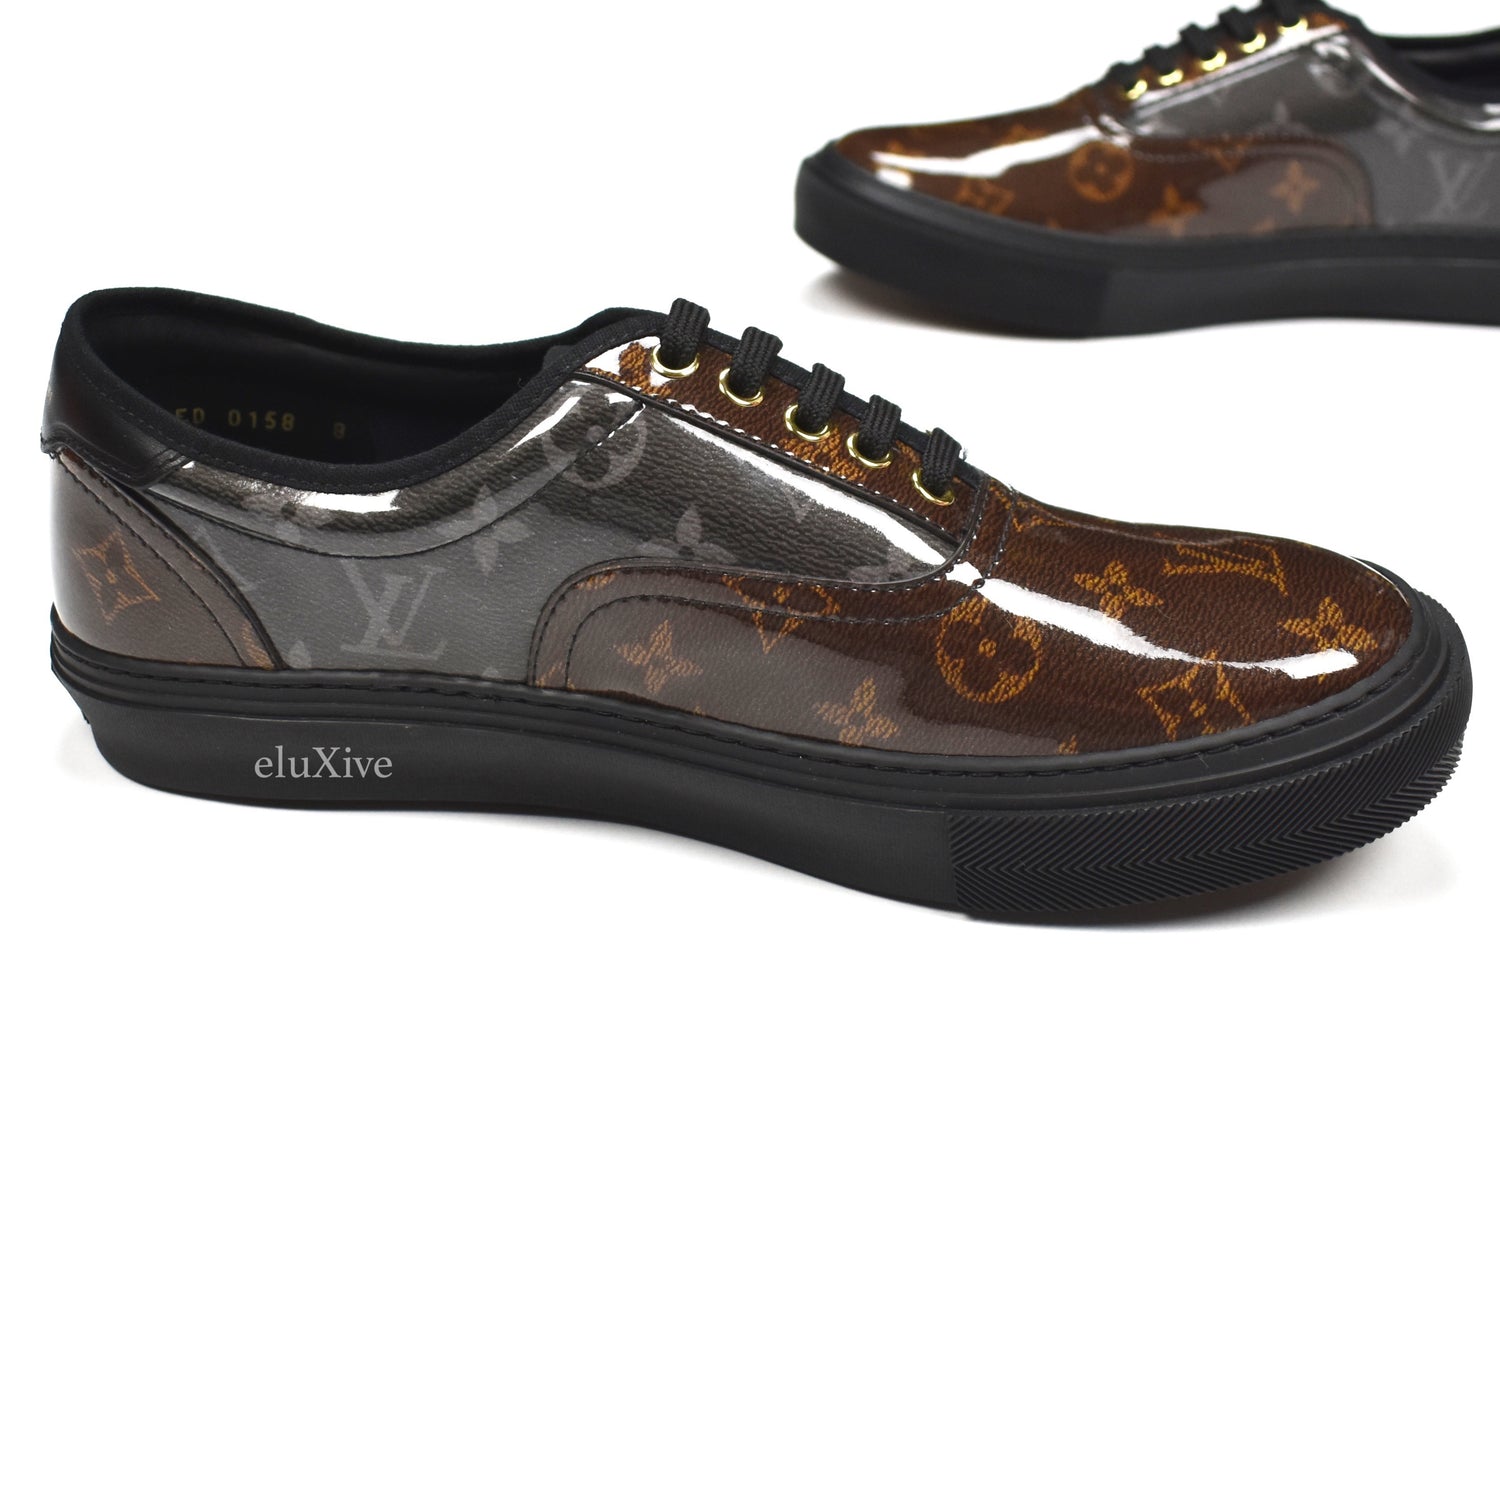 Louis Vuitton Monogram Trocadero Sneaker Low Brown/White Slip on., Luxury,  Sneakers & Footwear on Carousell